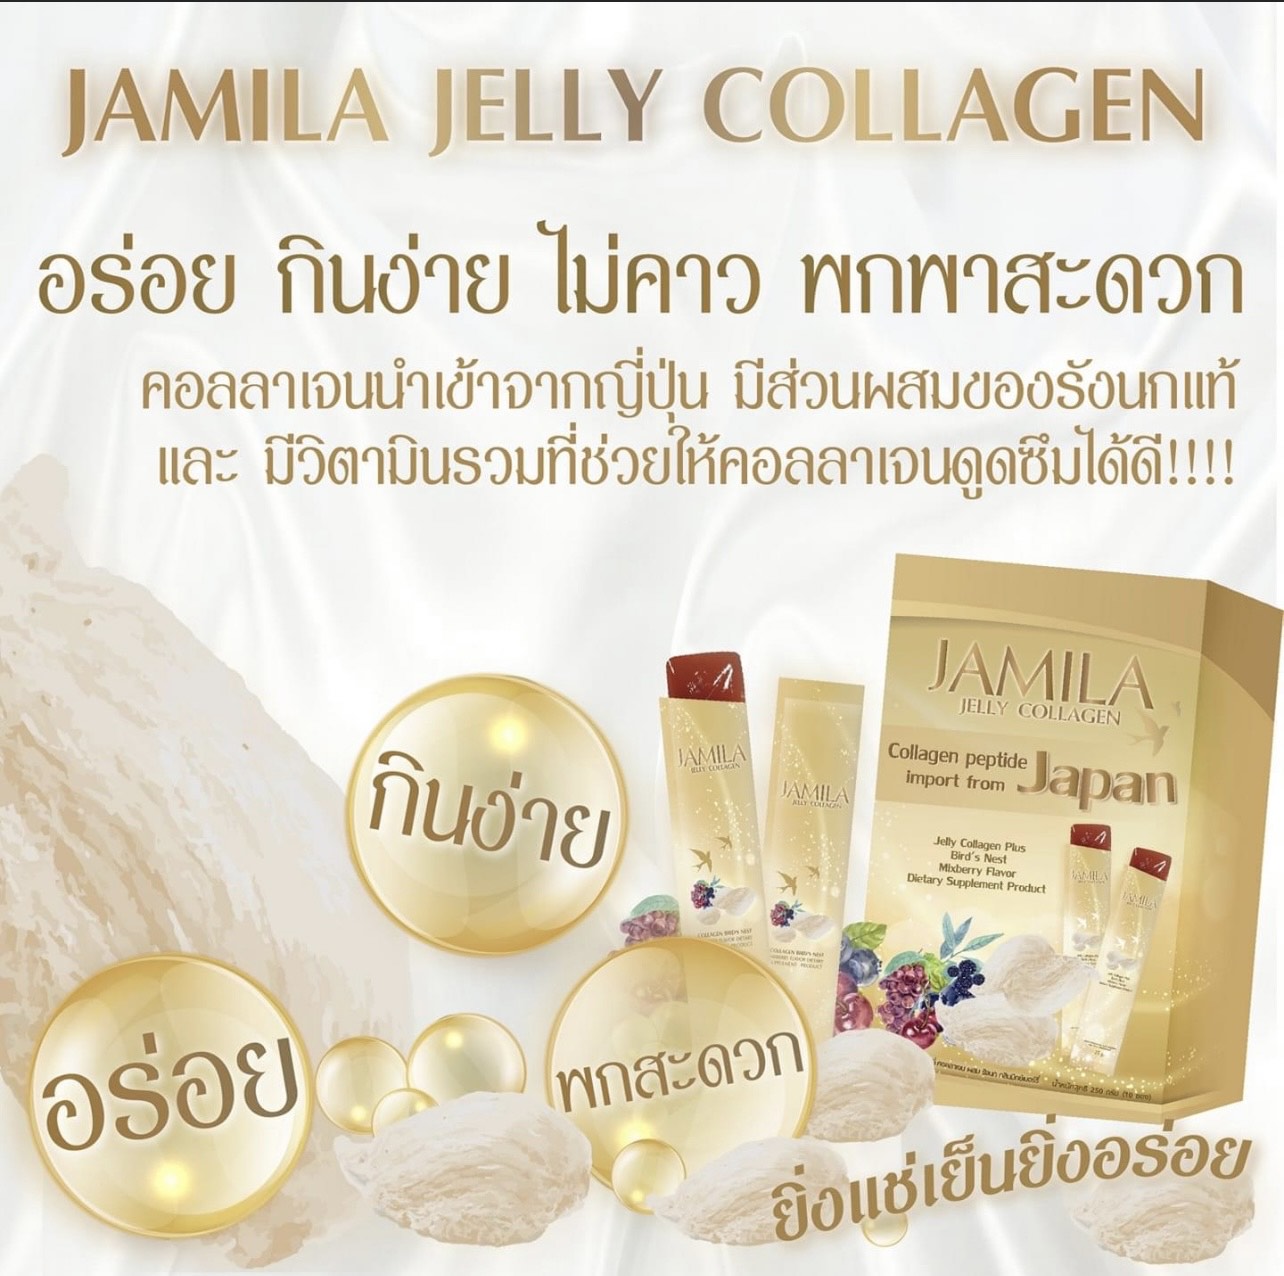 JAMILA JELLY COLLAGEN เจมิล่า เจลลี่ คอลลาเจน ผสมรังนก กลิ่นมิกเบอร์รี่ 250g(10ซอง)